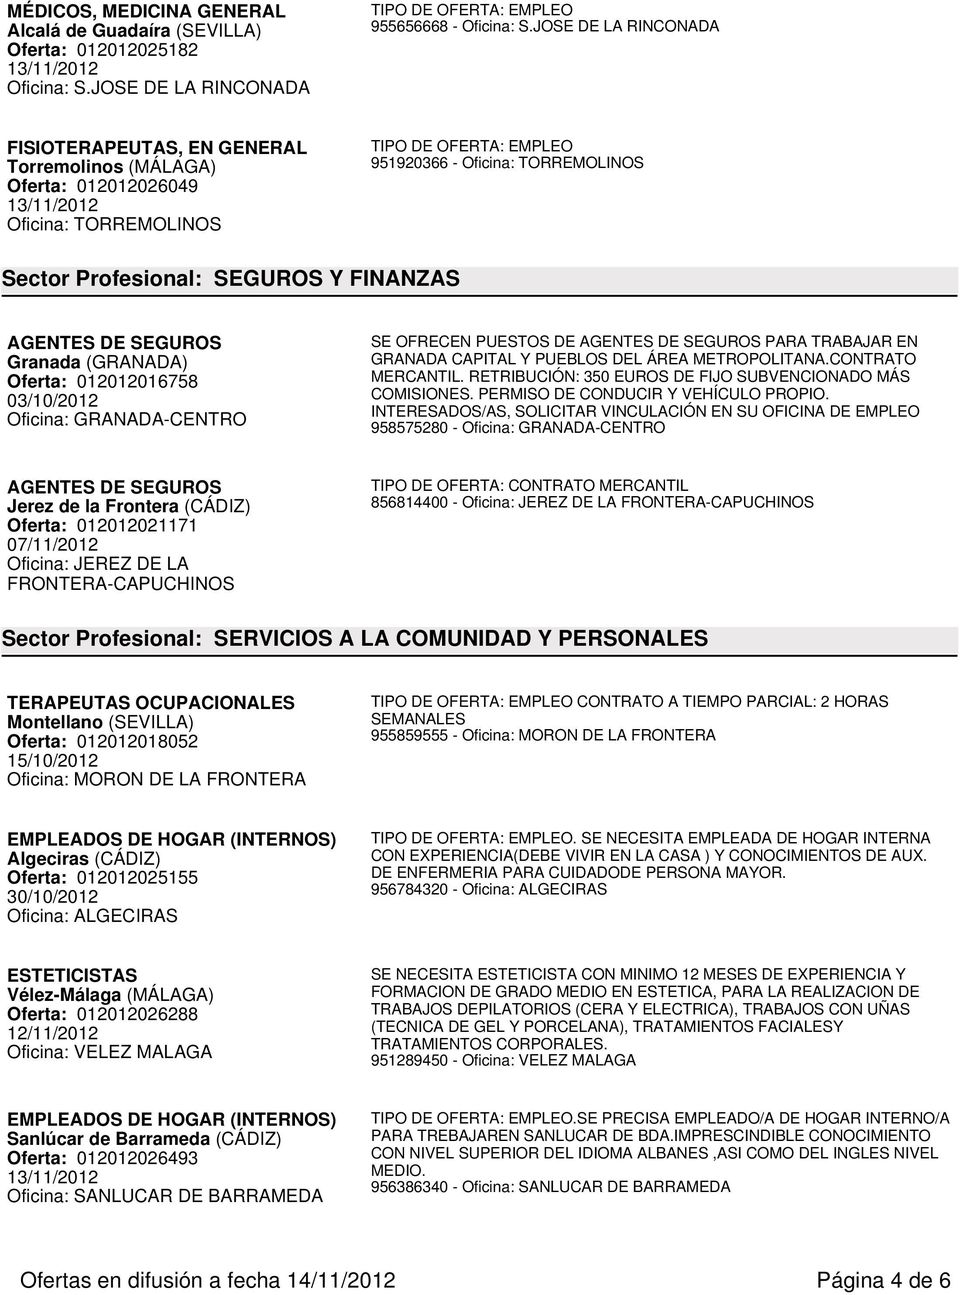 Granada (GRANADA) Oferta: 012012016758 03/10/2012 Oficina: GRANADA-CENTRO SE OFRECEN PUESTOS DE AGENTES DE SEGUROS PARA TRABAJAR EN GRANADA CAPITAL Y PUEBLOS DEL ÁREA METROPOLITANA.CONTRATO MERCANTIL.